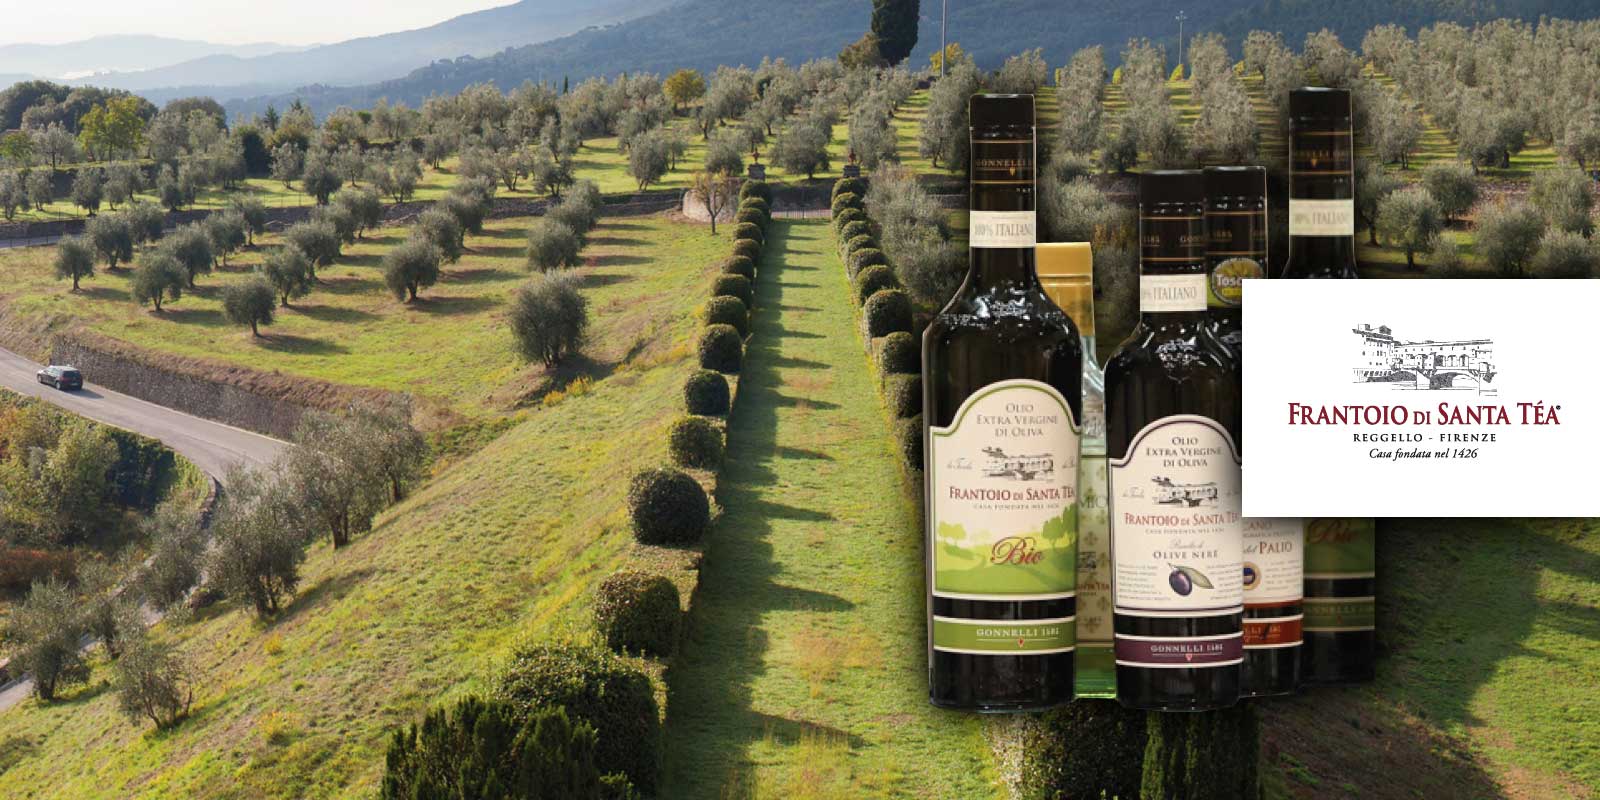 Gonnelli Frantoio di Santa Tea 1585 oliwa z oliwek z Toskanii Gonnelli 1585 to marka reprezentujaca zwiazek rodziny Gonnelli ze swiatem tradycyjnej produkcji oliwy. W 1585 roku rodzina kupila gospodarstwo Santa Tea i jego olejarnie, zbudowana w 1426 roku. Dzis firma, wlasciciel mlyna Vertine w Chianti Classico, jest jedna z wloskich doskonalosci w swiecie oliwy z pierwszego tloczenia. Filozofia firmy zawsze bylo oferowanie zdrowej, prawdziwej i naturalnej oliwy z oliwek.
Gonnelli 1585, ktora osiagnela kilka kamieni milowych w branzy i nieustannie potwierdza znaczenie oliwy z oliwek jako srodka spozywczego o niezliczonych wlasciwosciach odzywczych i zdrowotnych, a takze nosnika smaku i wartosci w kazdym daniu i preparacie. Dzis Gonnelli 1585 oferuje szeroka i roznorodna game produktow z wieloma roznymi olejami o roznych smakach i aromatach.